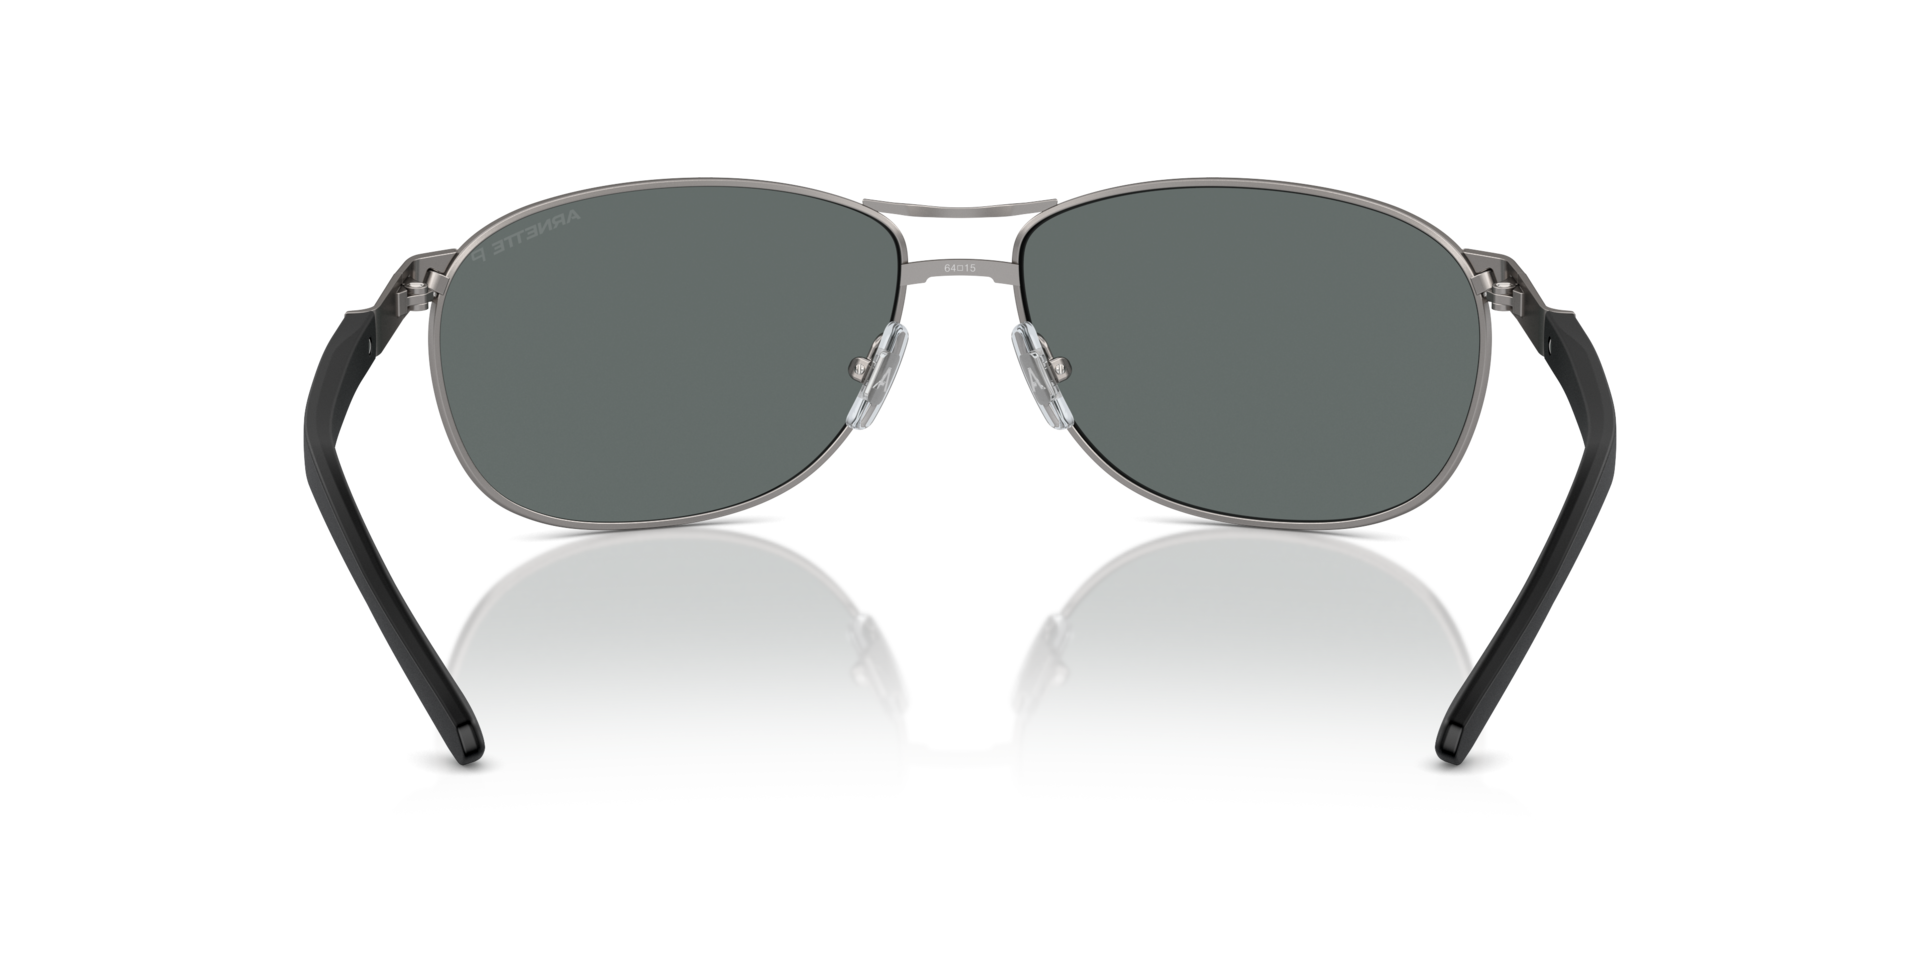 Das Bild zeigt die Sonnenbrille AN3090 745/81 von der Marke Arnette in silber.